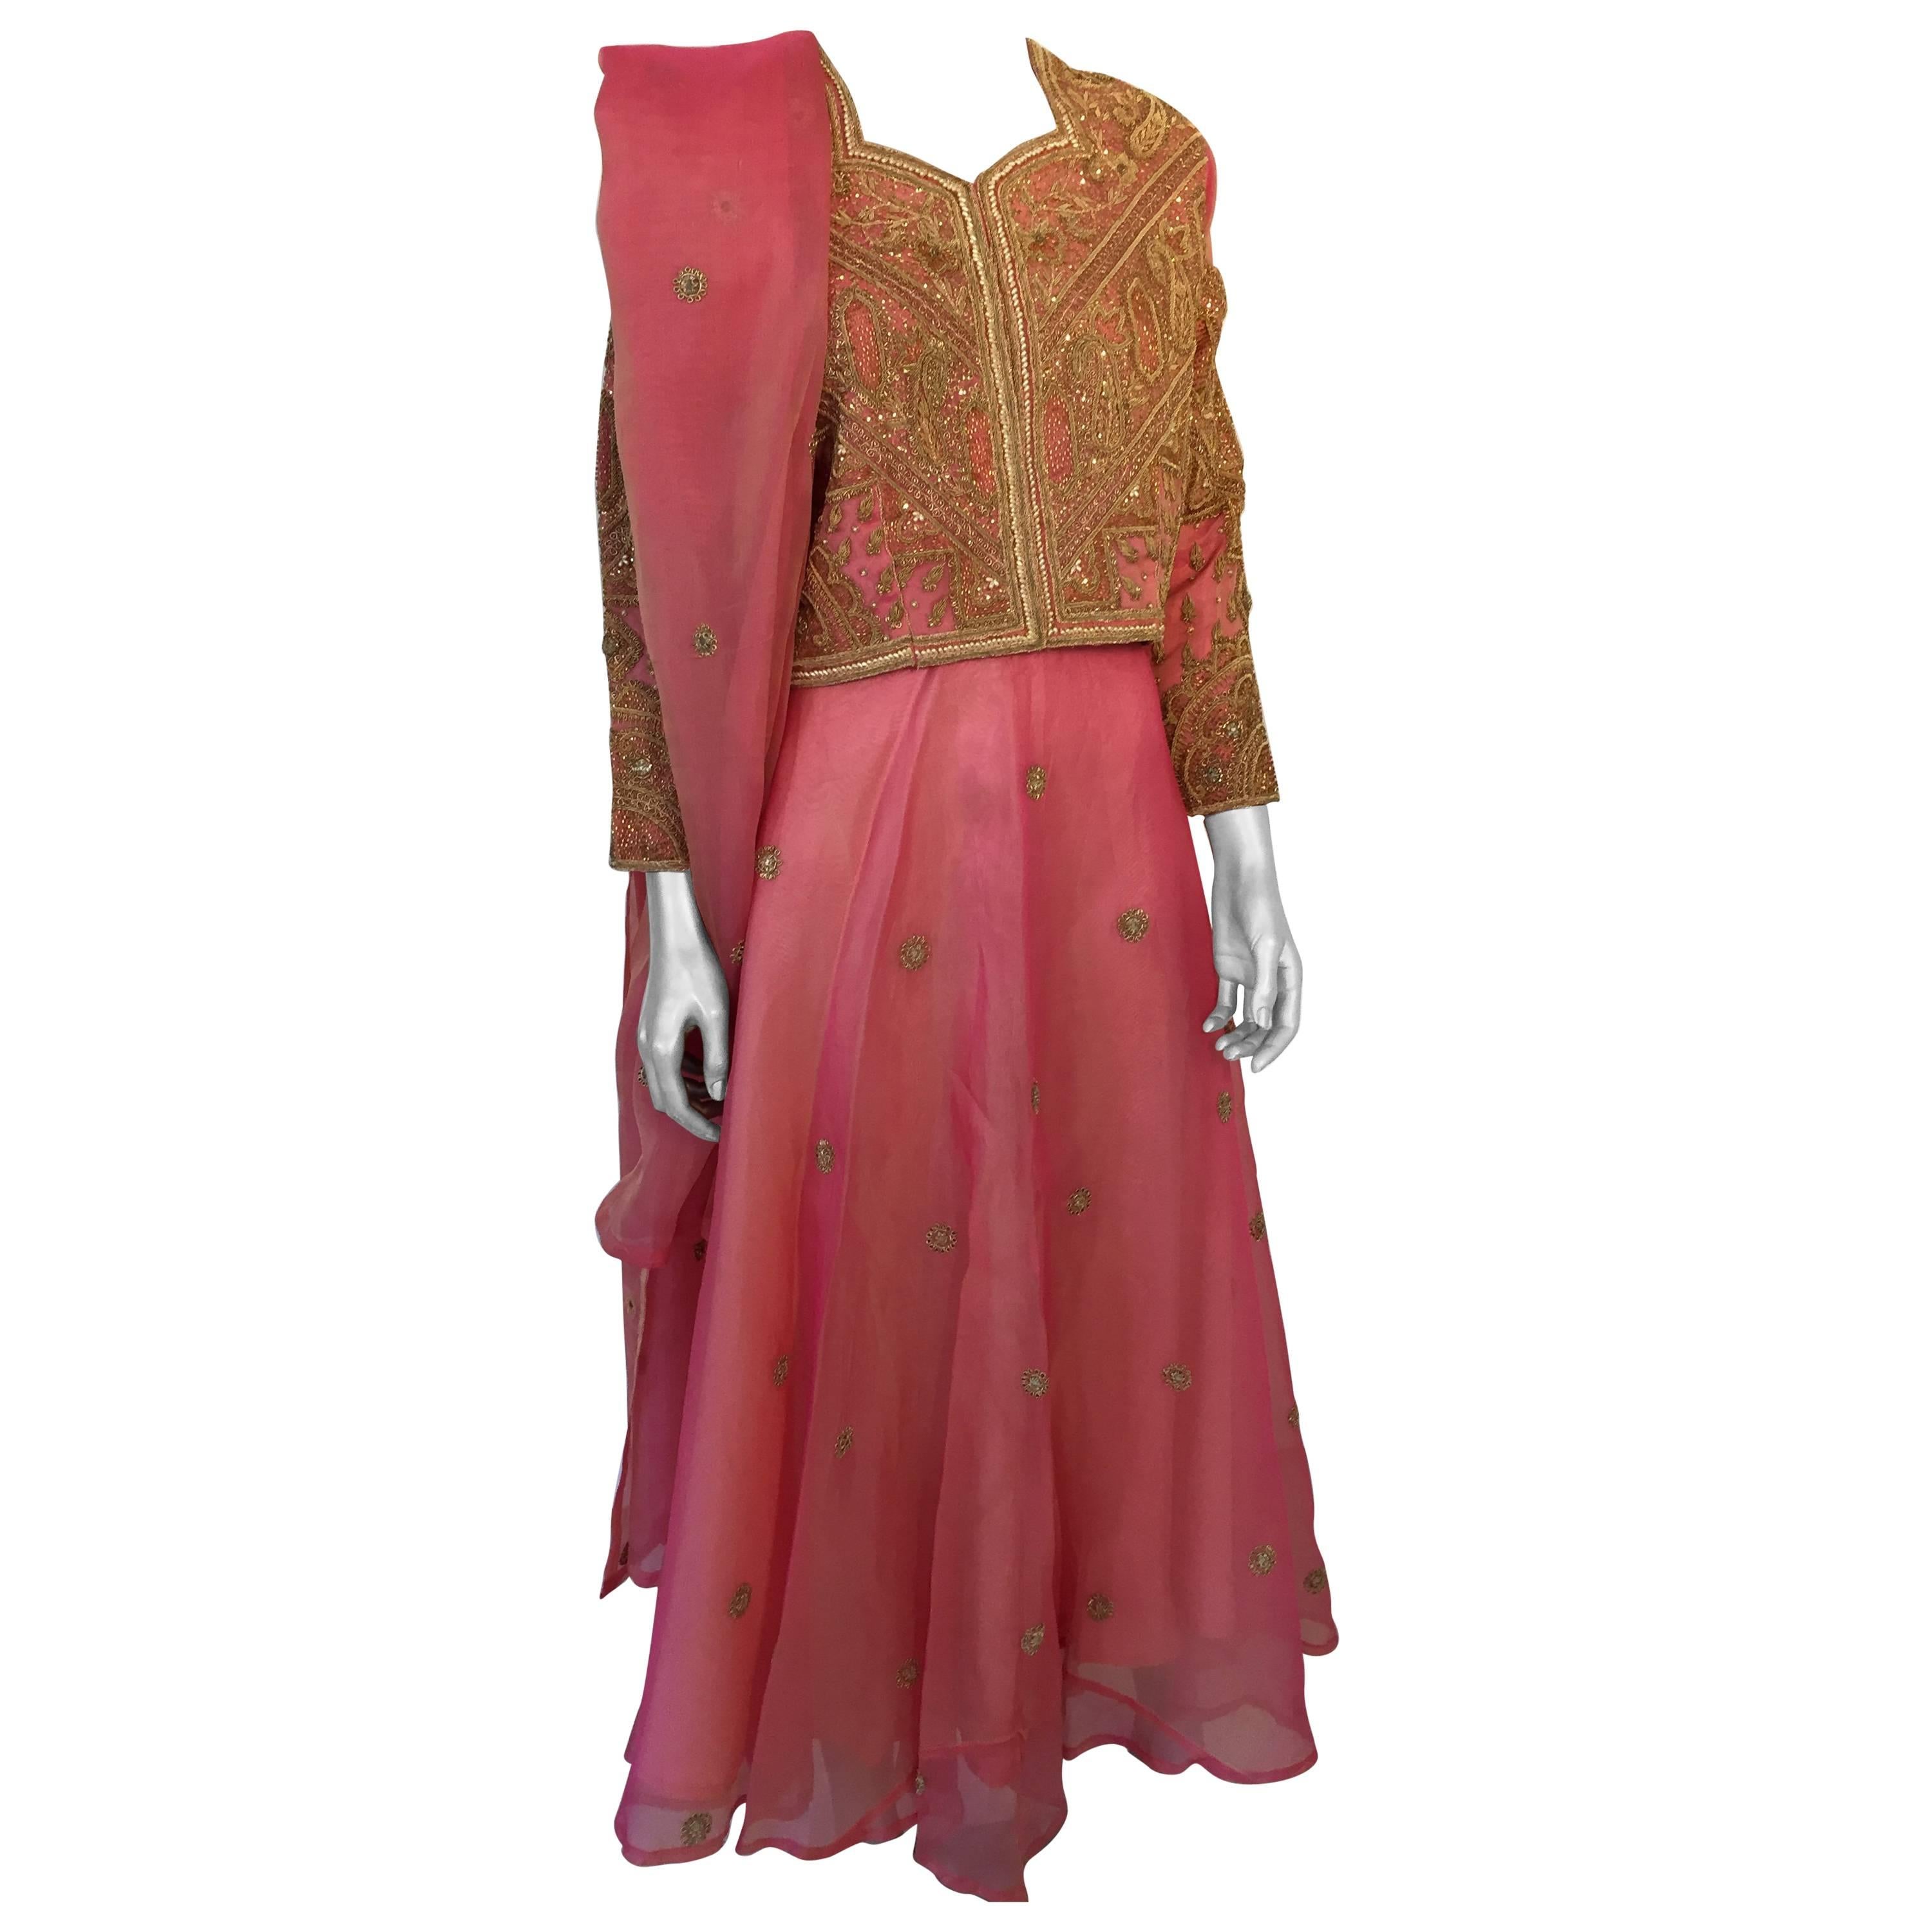 Robe de soirée en soie brodée rose et or 3 pièces Gilet, jupe et châle